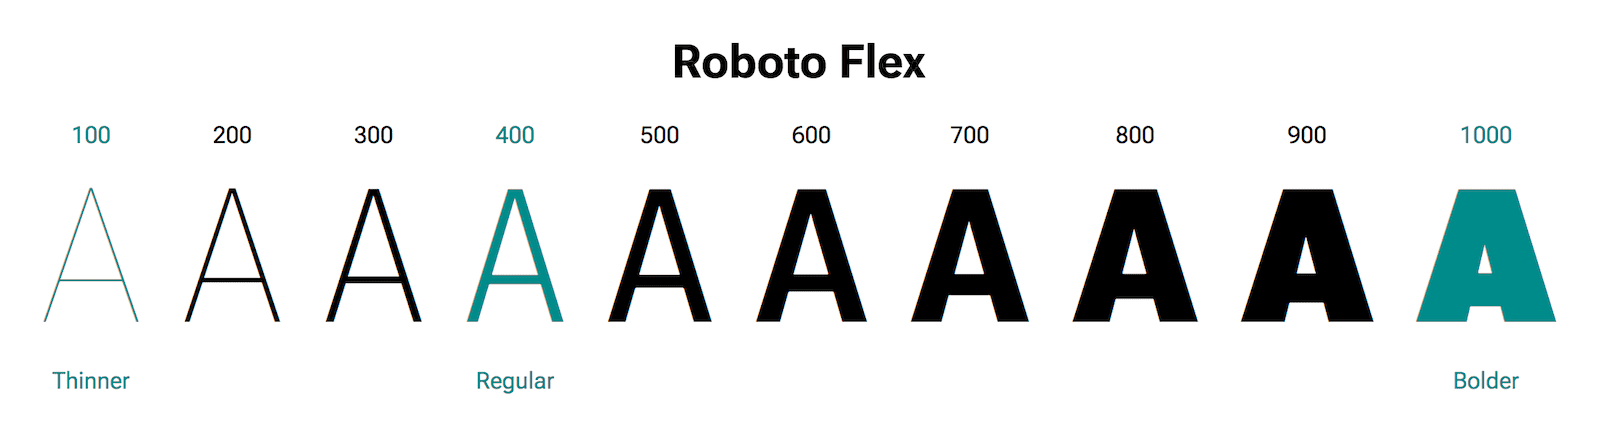 La letra 'A' se muestra en diferentes pesos